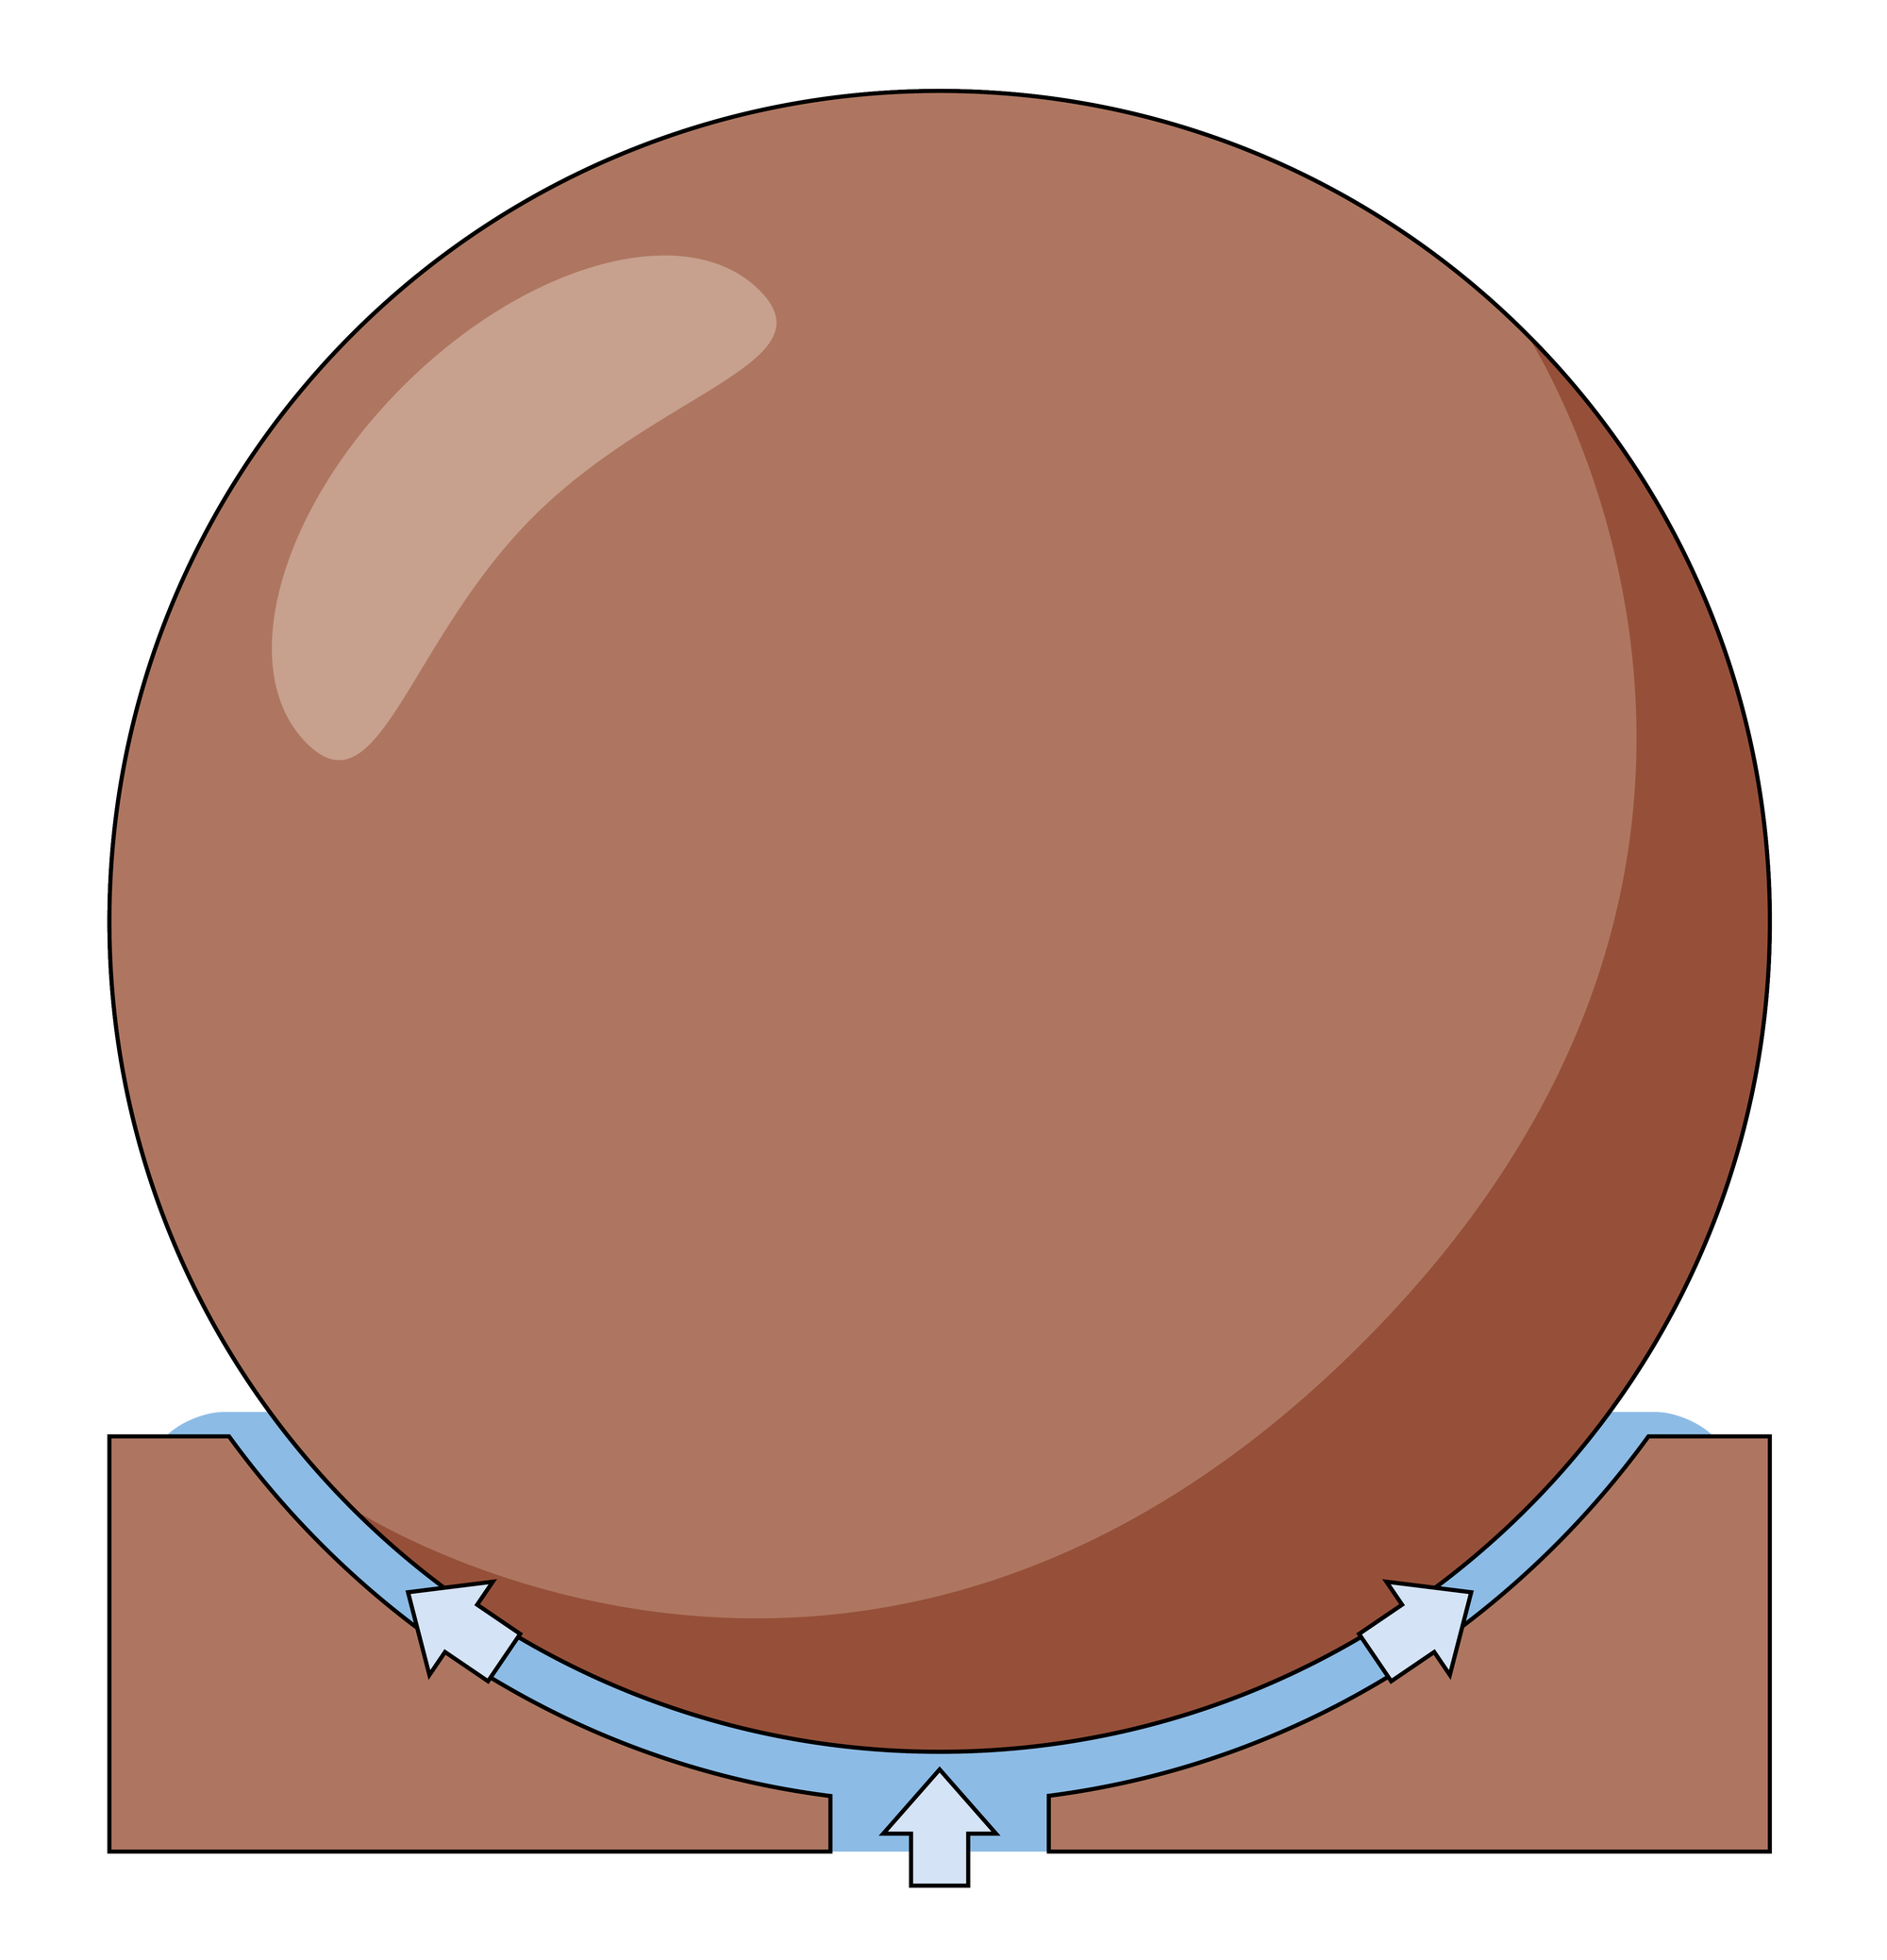 Illustration einer Kugel, die von Wasser angehoben wird, das von unten aus einer basis zufließt und zu den Seiten aus einem Spalt abfließt